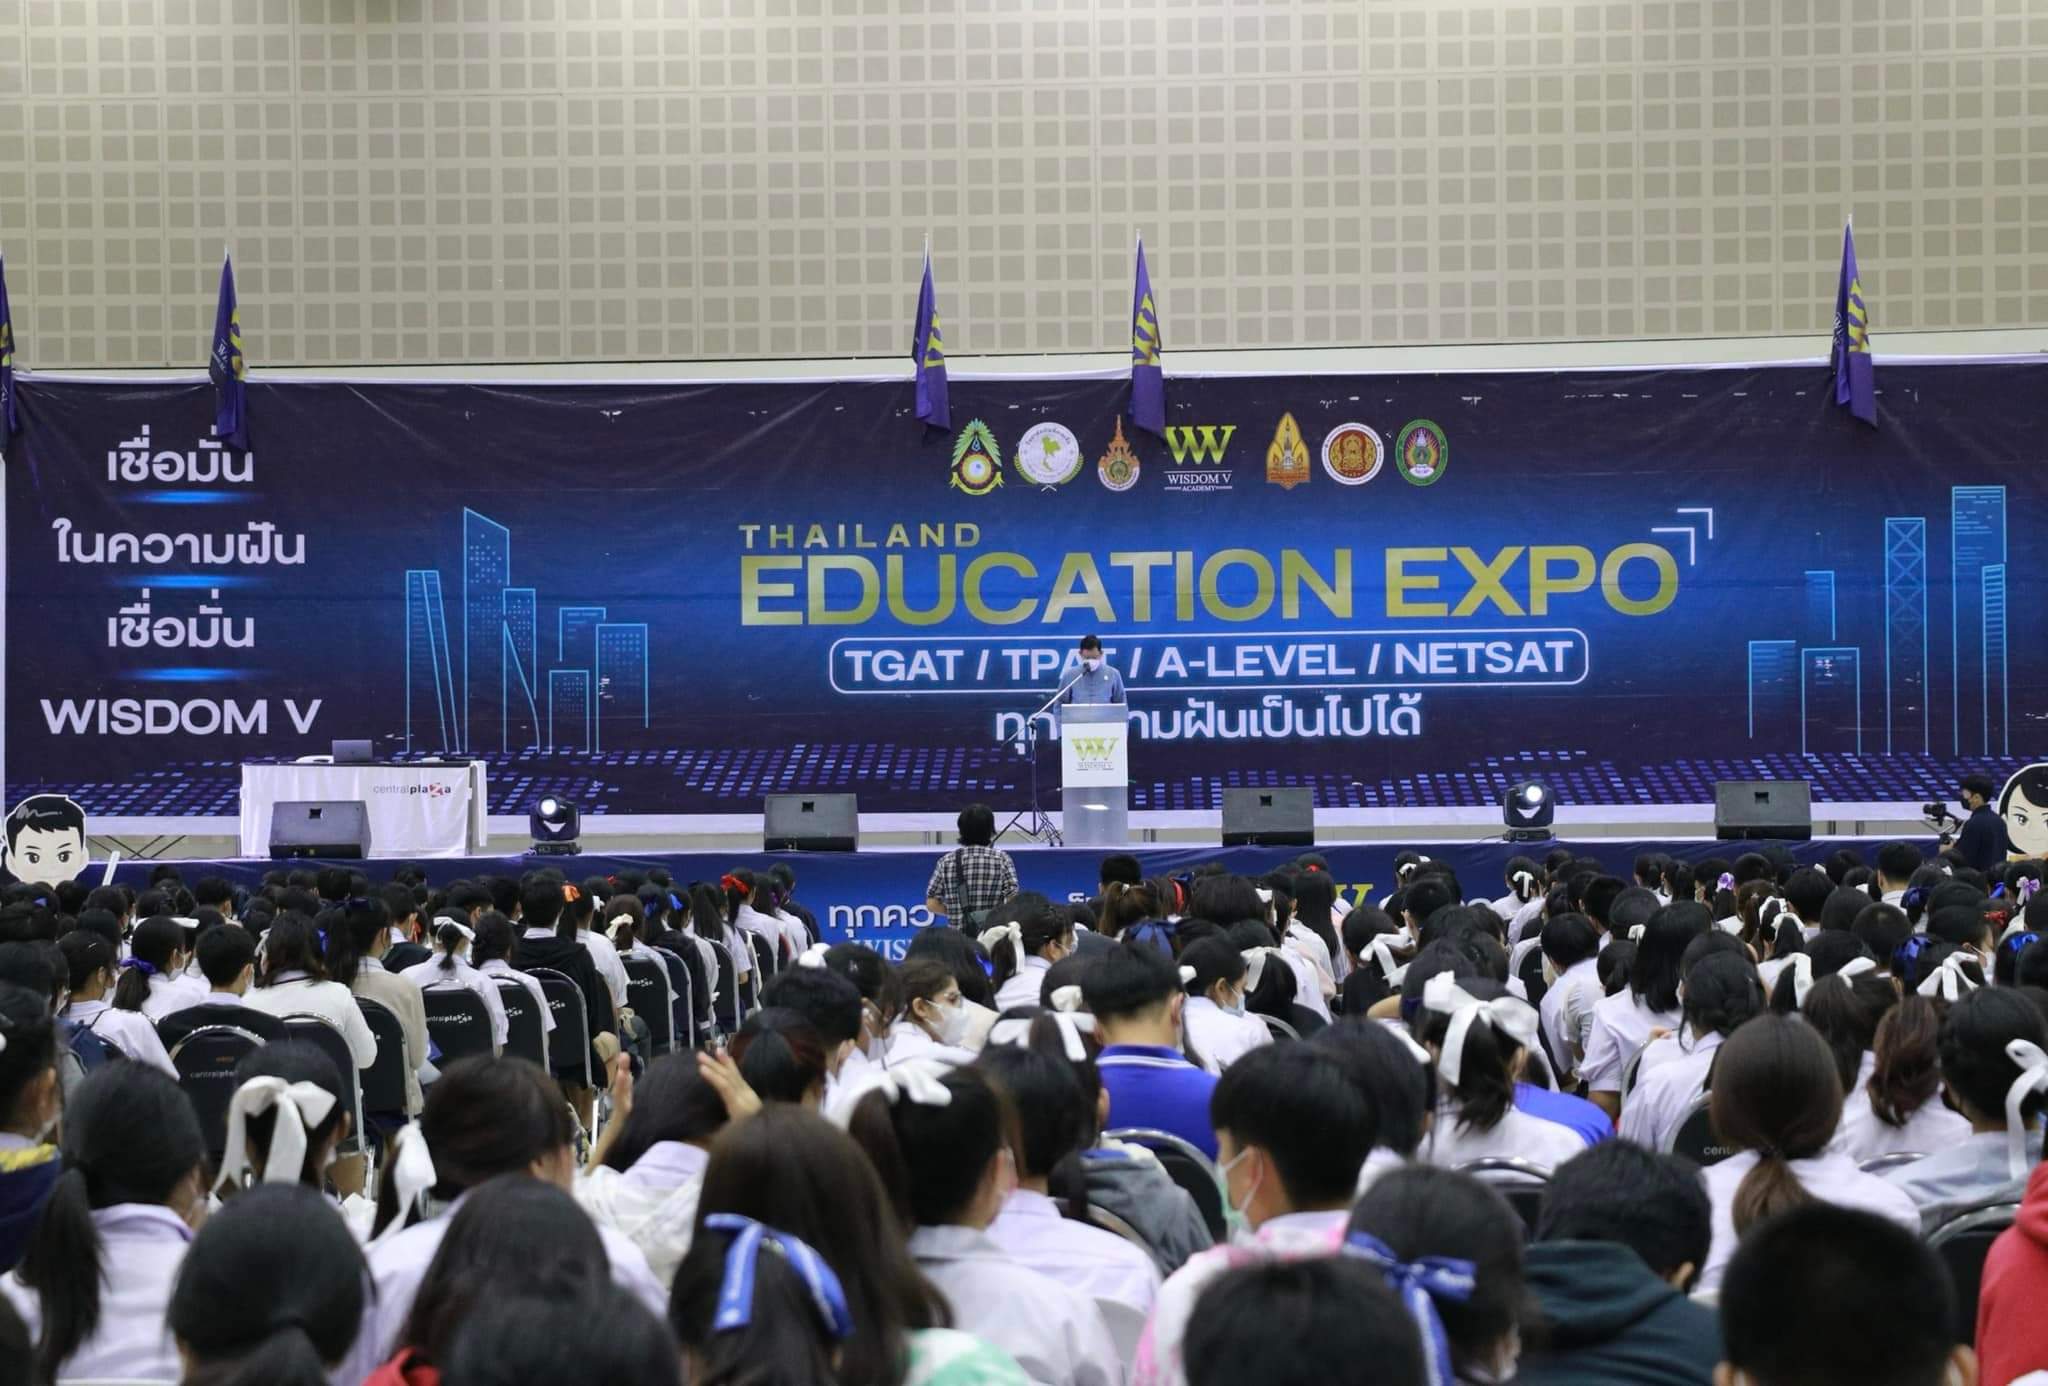 กิจกรรม THAILAND EDUCATION EXPO 2022 แนะแนววิชาการเด็กนักเรียนภาคเหนือ